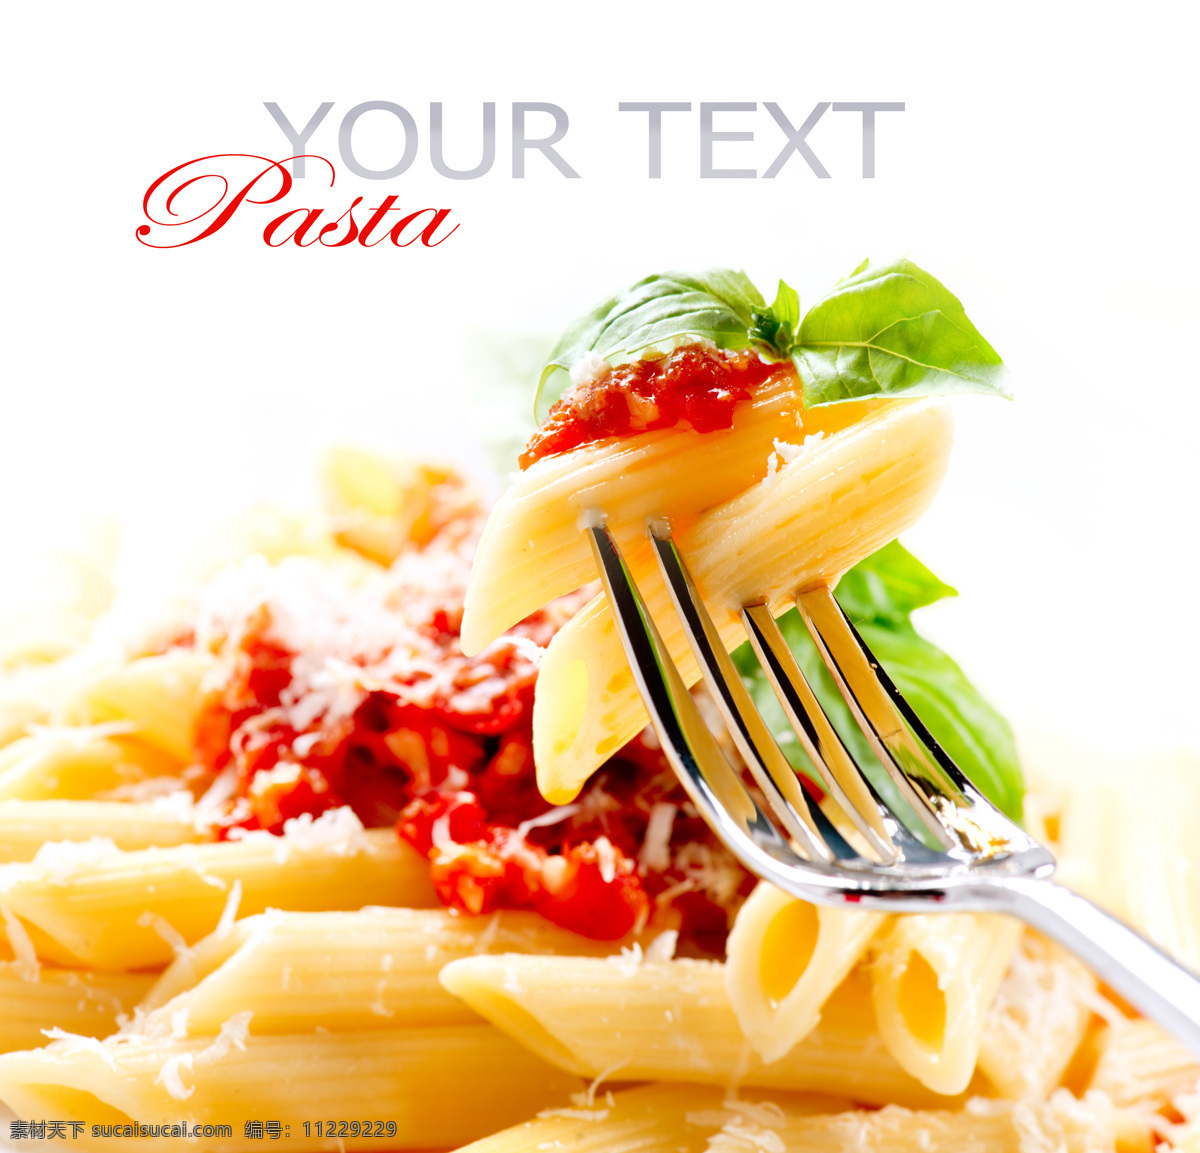 意大利 美食 意大利面 空心面 意大利菜 意大利美食 意大利食物 西餐 食物 餐饮美食 生活百科